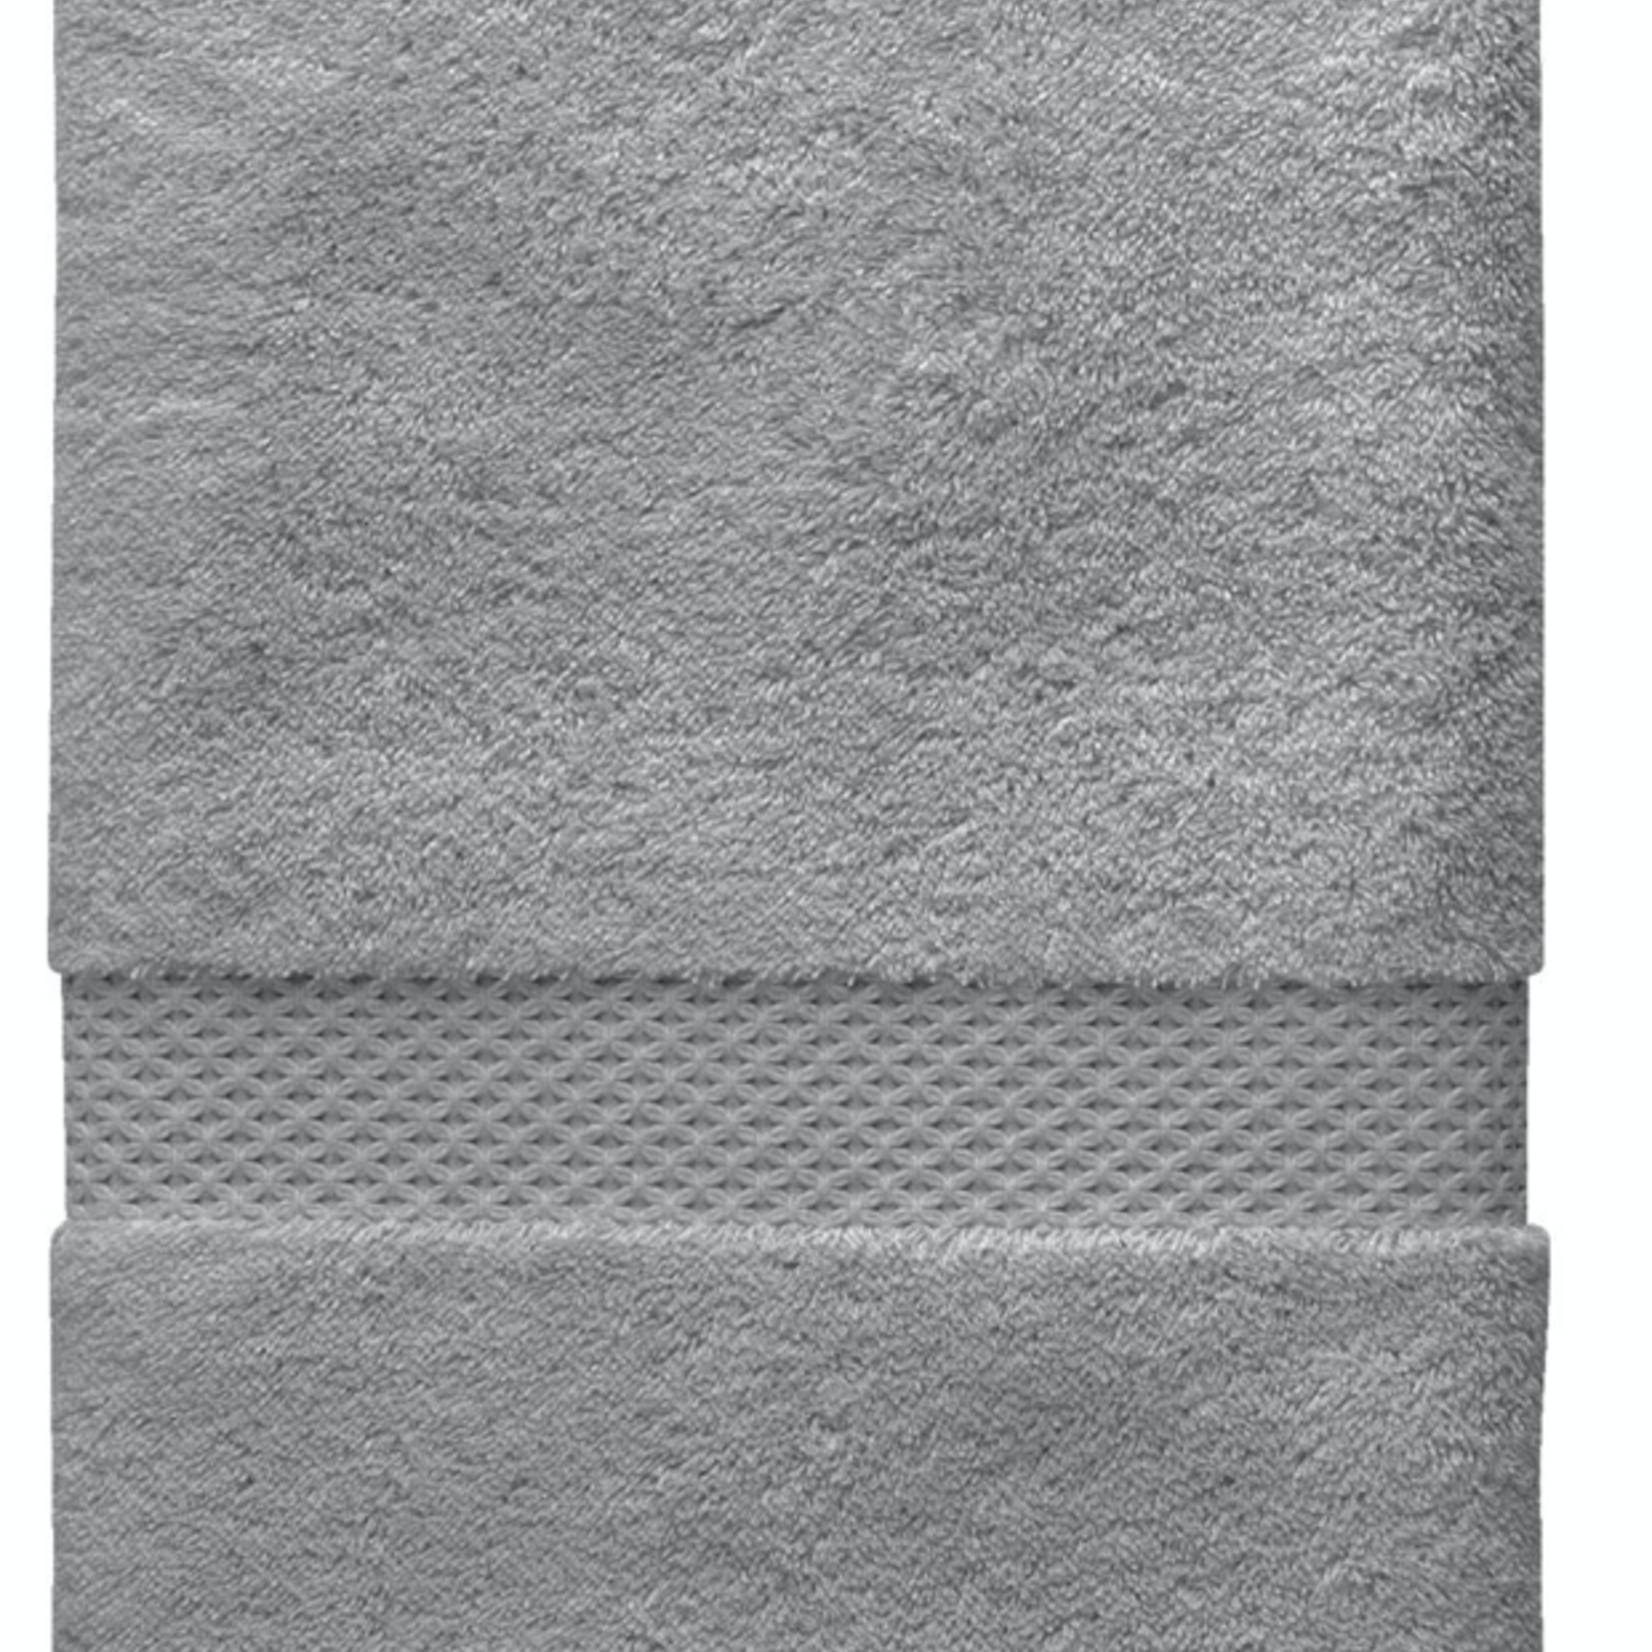 ETOILE (83% cotton, 17% modal) Bath Sheet